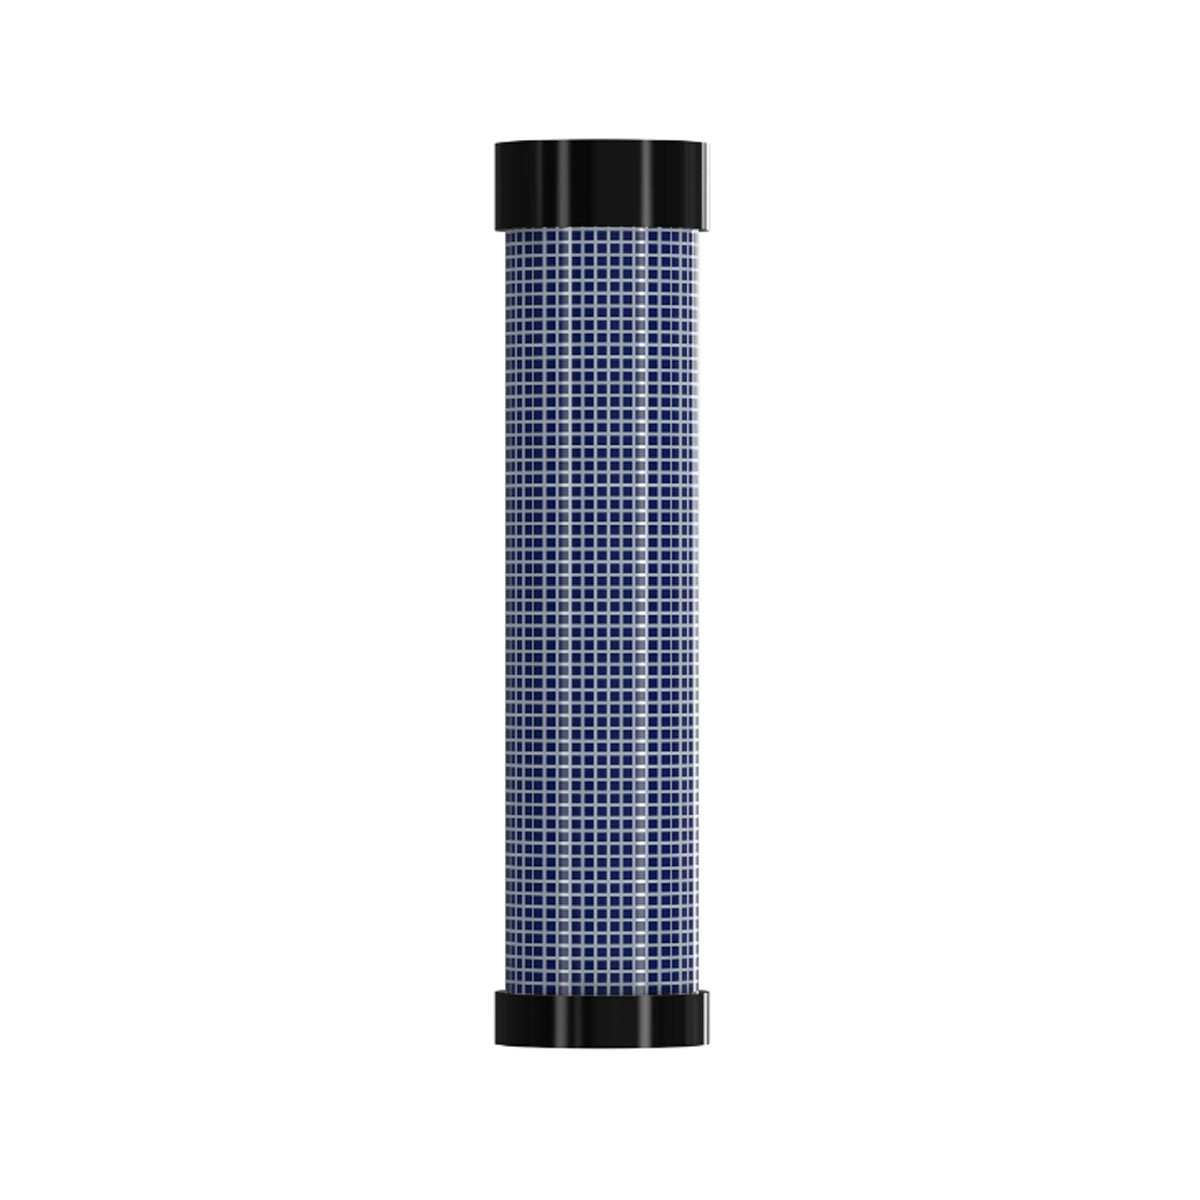 John Deere Air Filter Element (Inner) for Z900, 1E, 1R, 2000, 2R, 3000, 3E, 4000 & 4010 Series - M131803